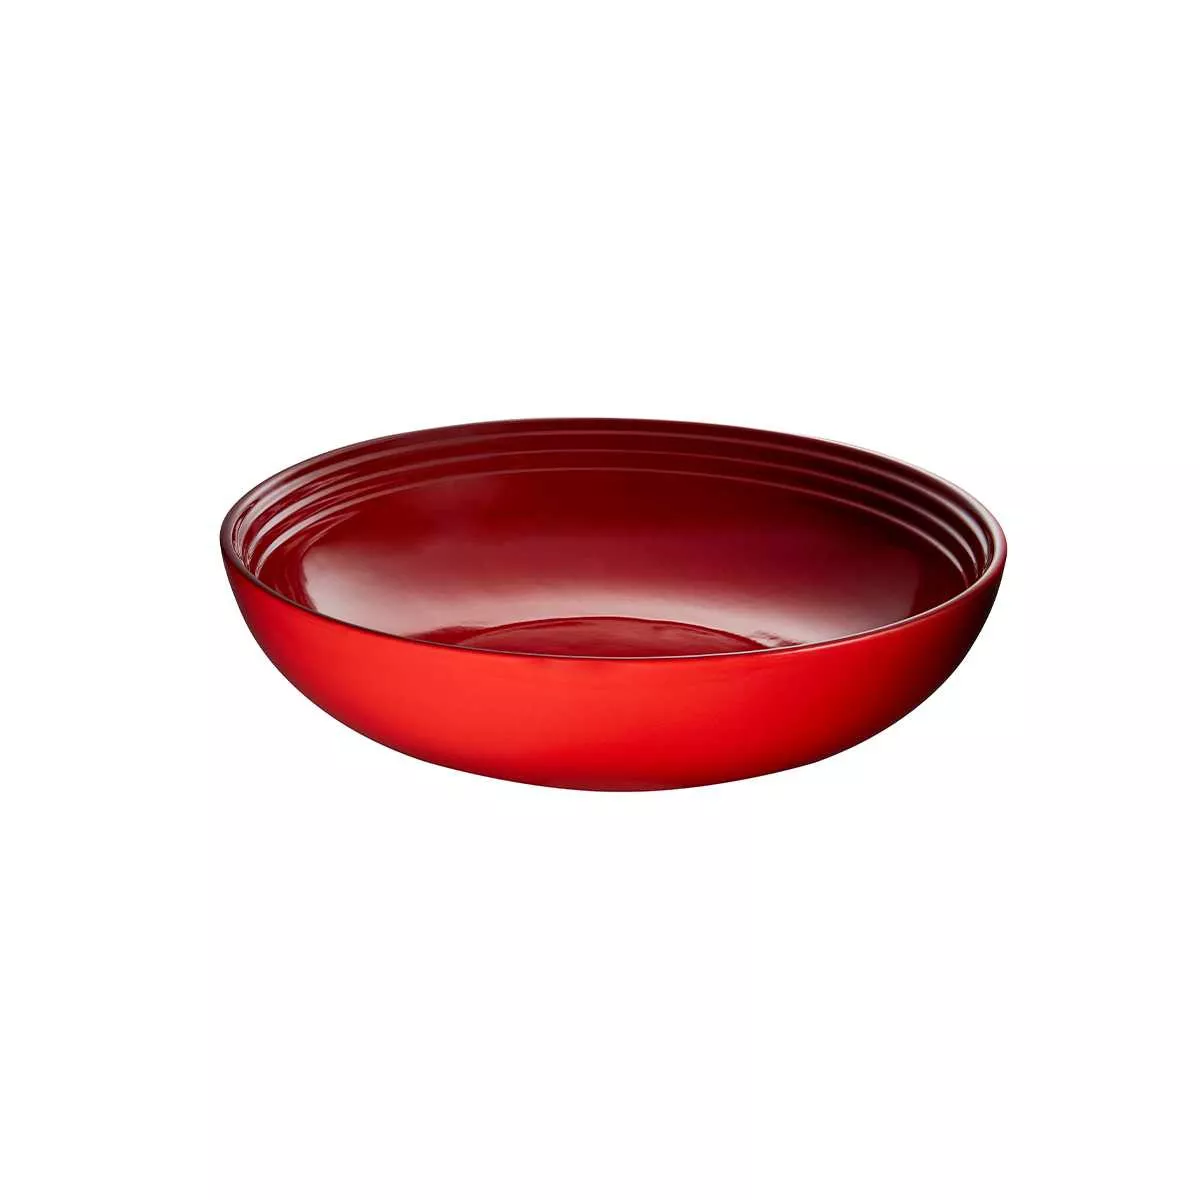 Салатник Le Creuset Branded Cherry Red, диаметр 32 см (91059613060099) - Фото nav 1